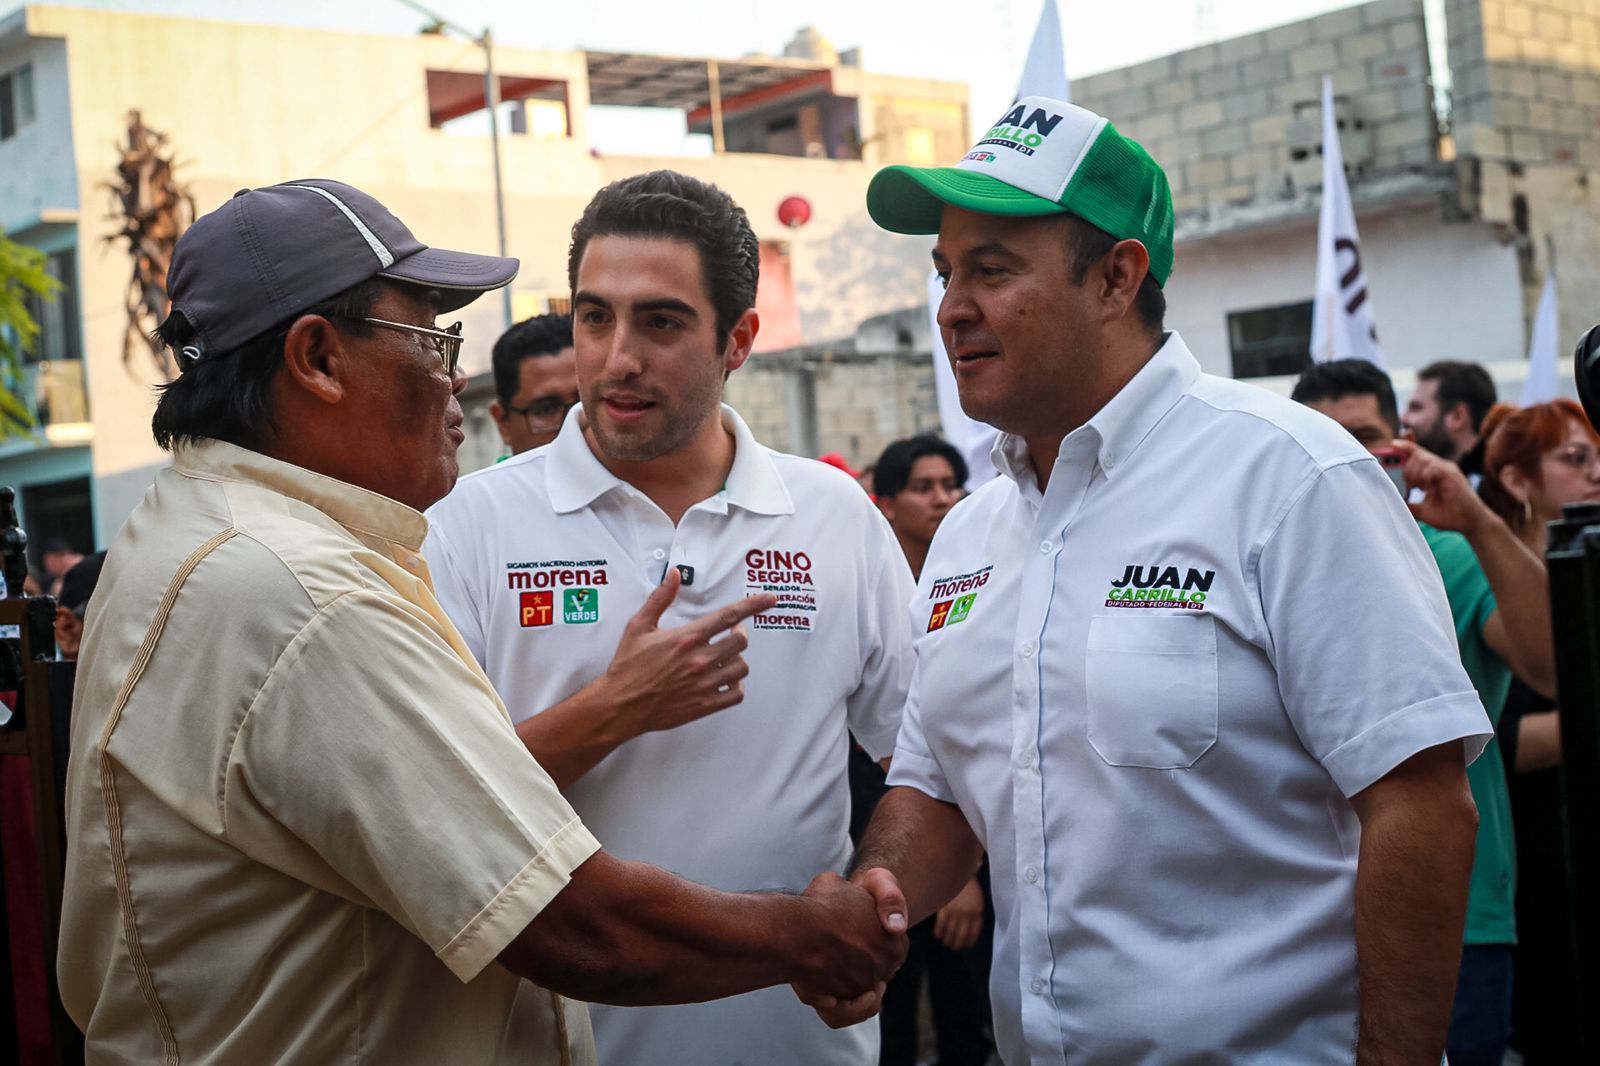 “Necesitamos un Congreso a favor del Pueblo”: Juan Carrillo recibe gran respaldo en Villas del Sol